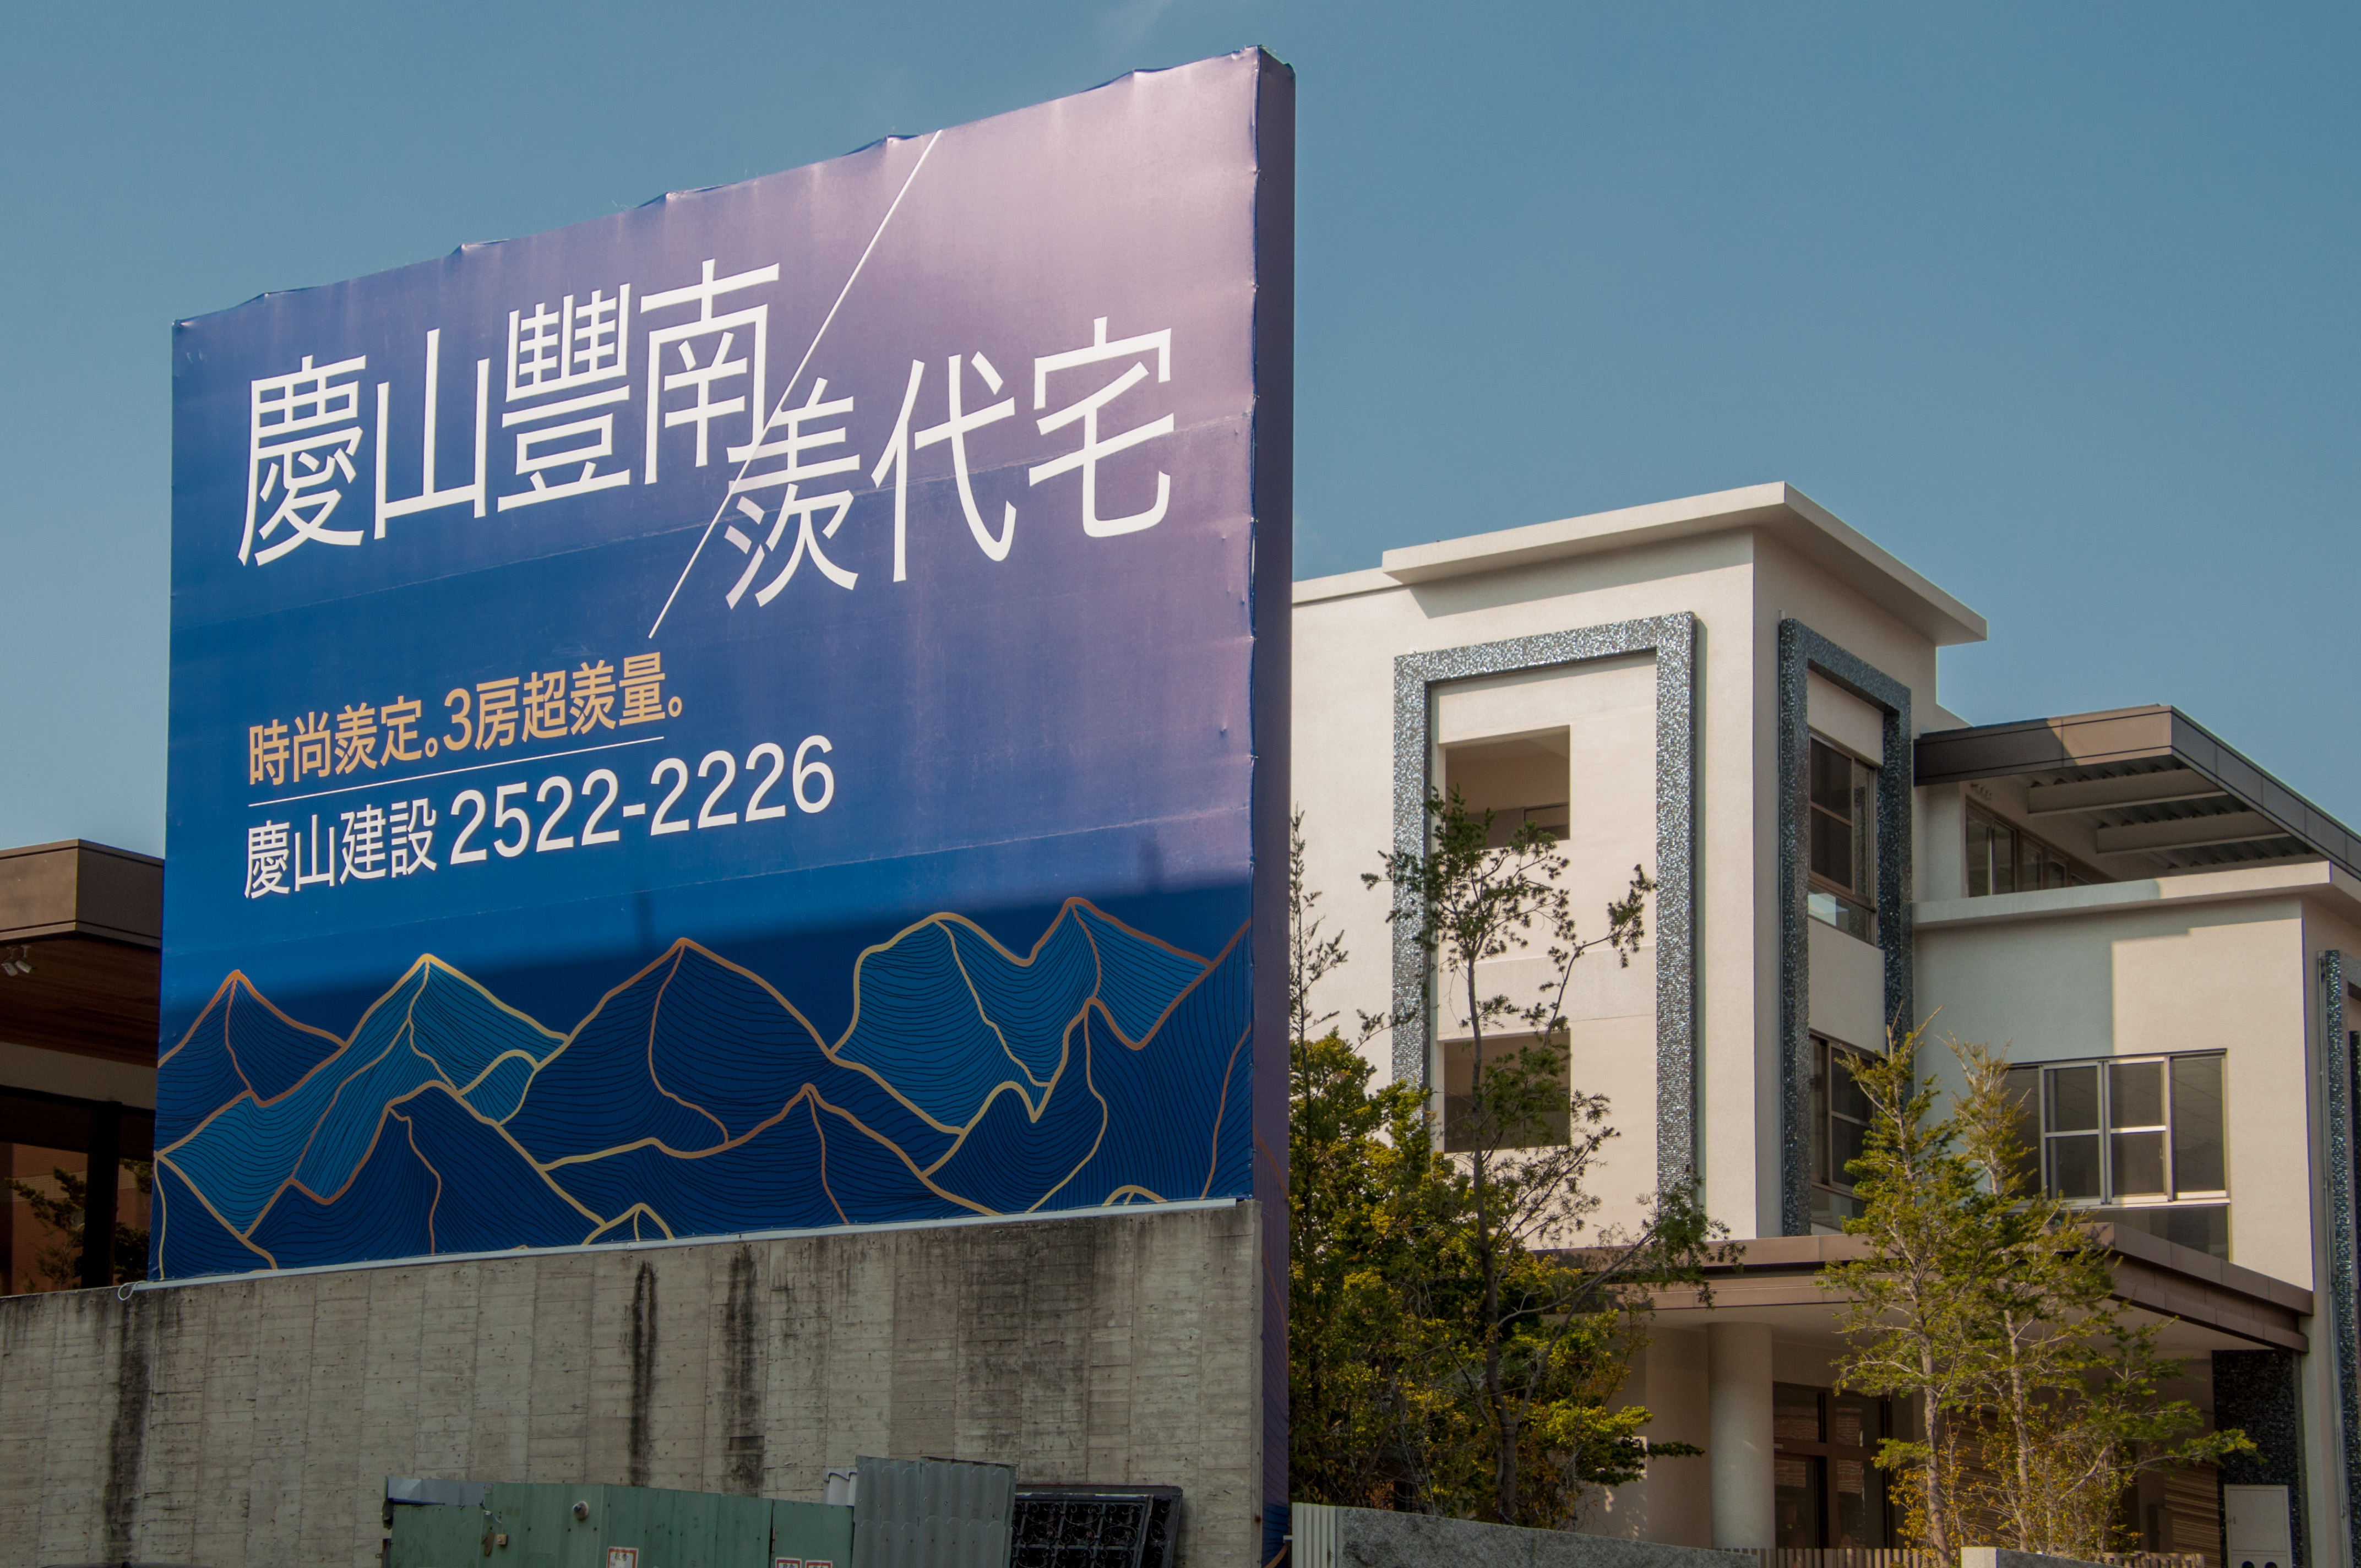 圖片:建案搶先看|慶山豐南羨代宅 綠空廊道第一排 低碳慢活 休閒生活宅